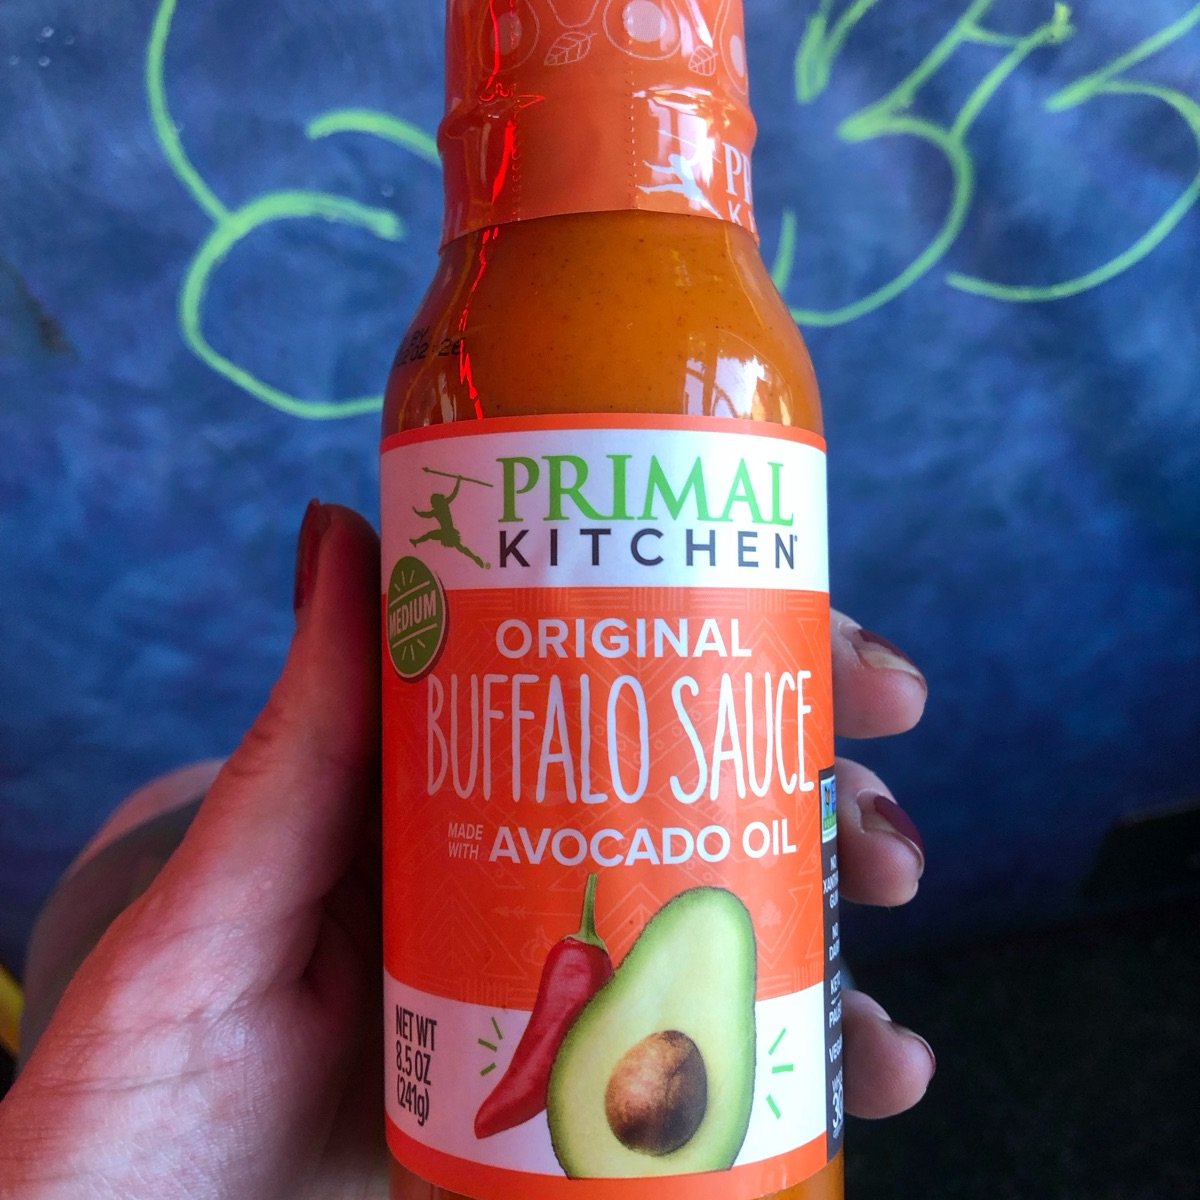 Primal Kitchen Buffalo Sauce, Medium Heat - 8.5 oz